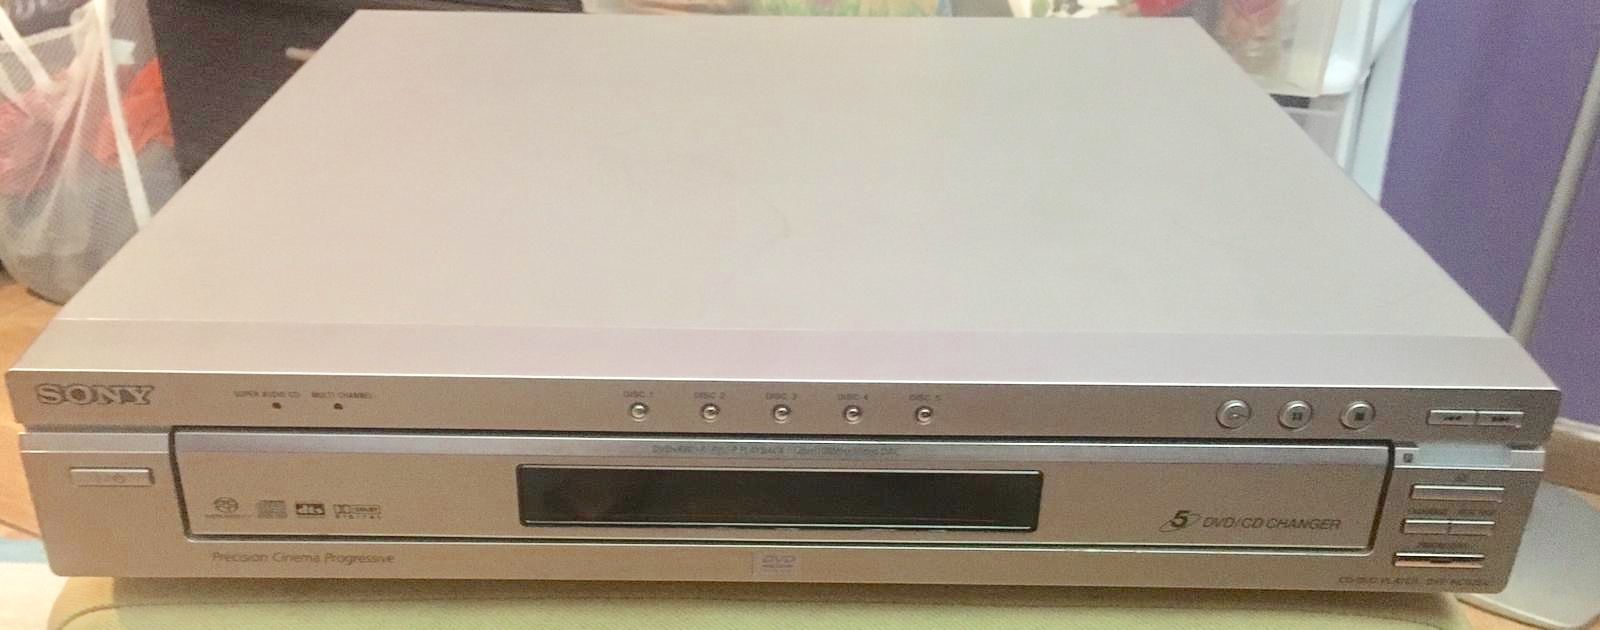 Sony CD / DVD player